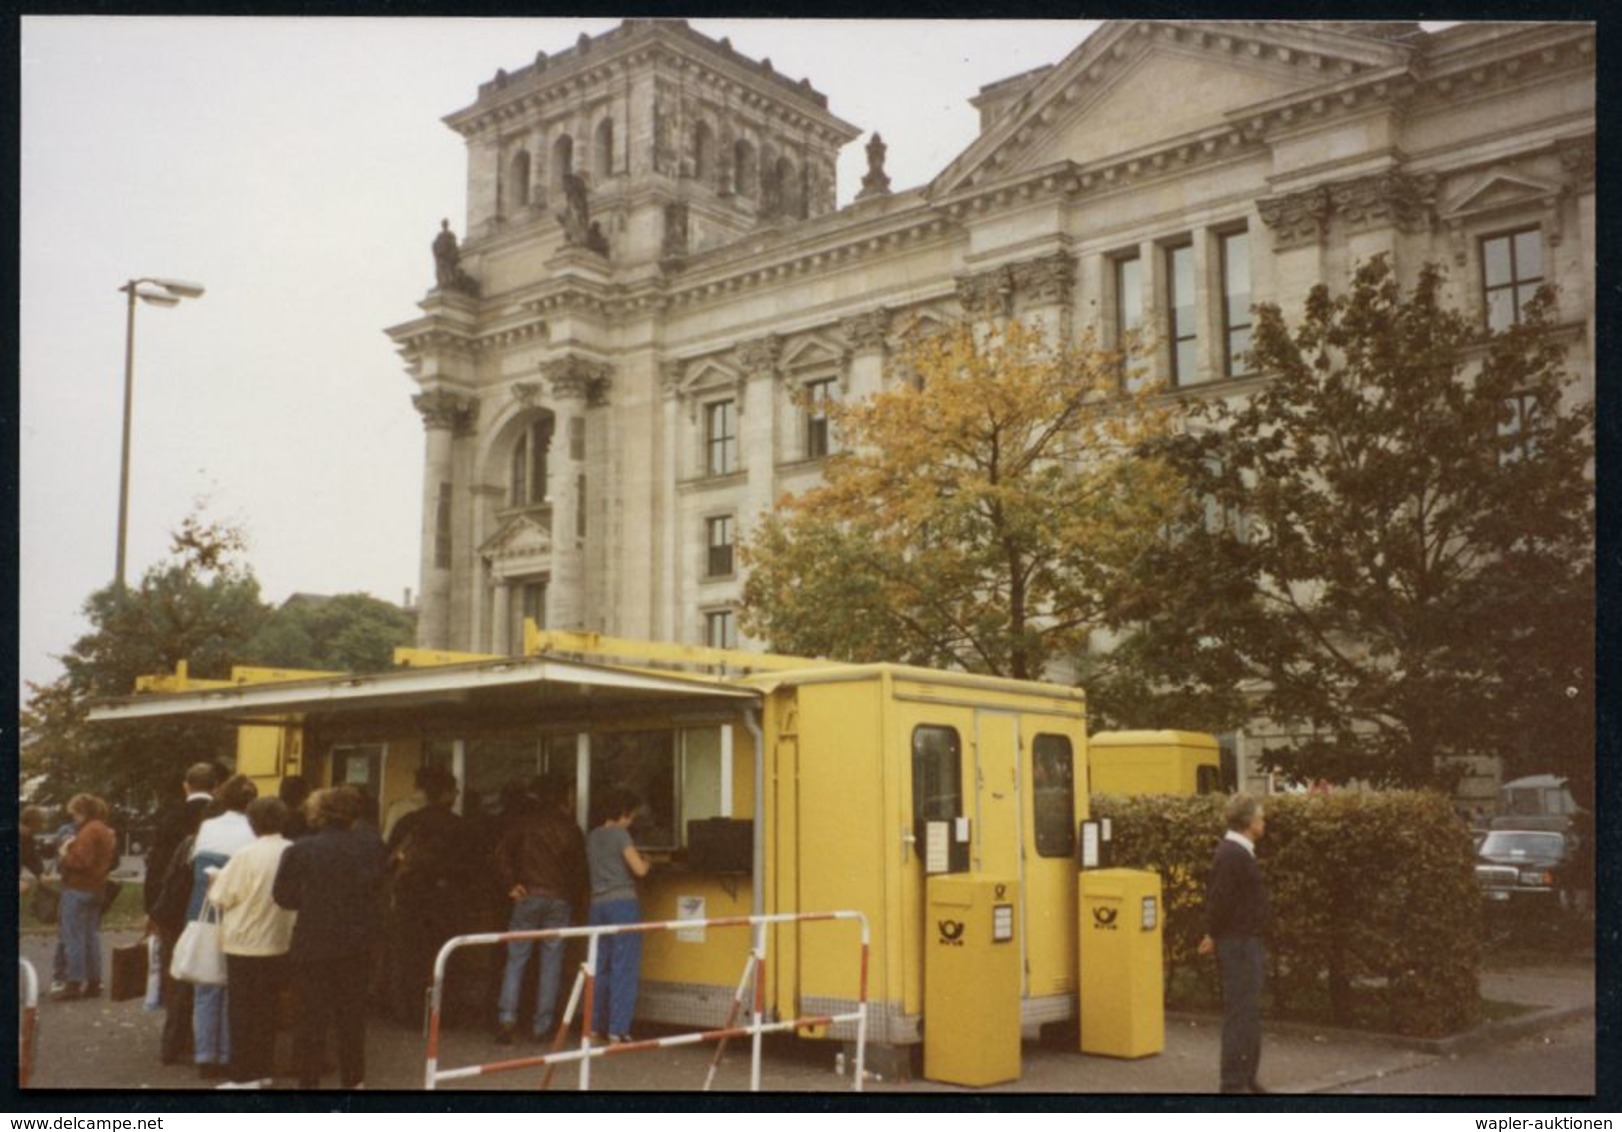 1000 BERLIN 12/ DEUTSCHE/ EINHEIT/ STAATSAKT IN BERLIN 1990 (3.10.) SSt = Reichstagspostamt + Mobiles Postamt Am Reichsa - Otros & Sin Clasificación